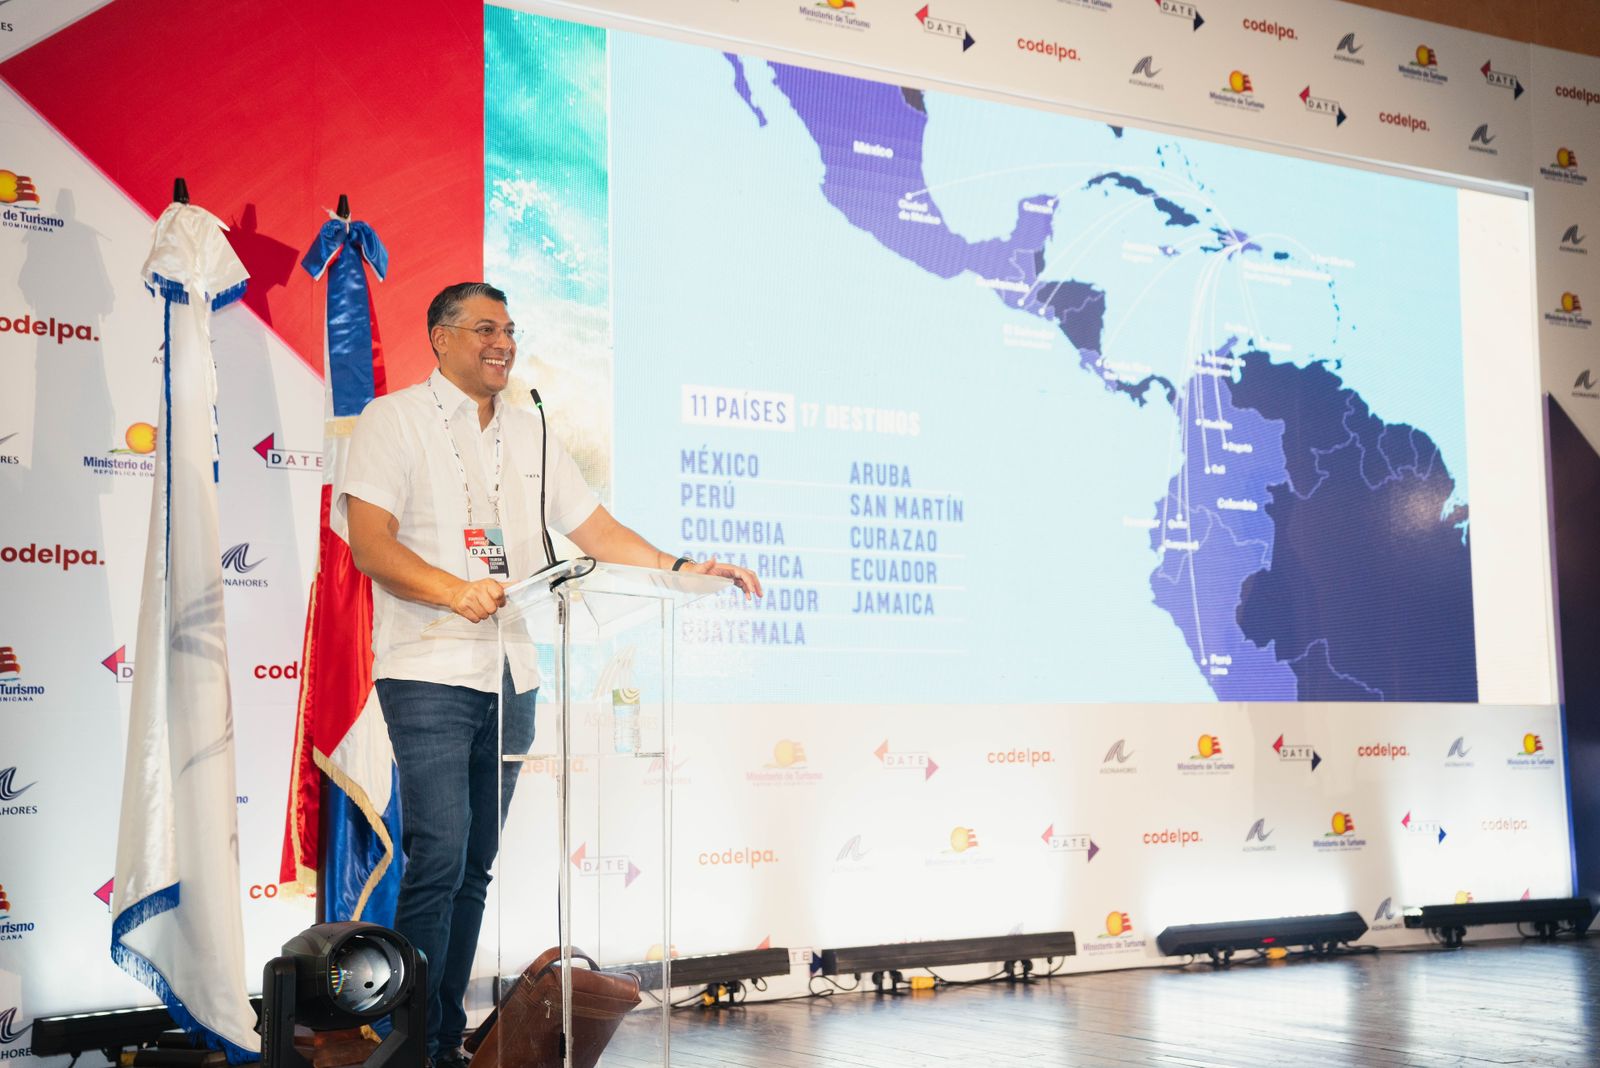 República Dominicana: Arajet lanza 42 conexiones en 9 países de su red de rutas